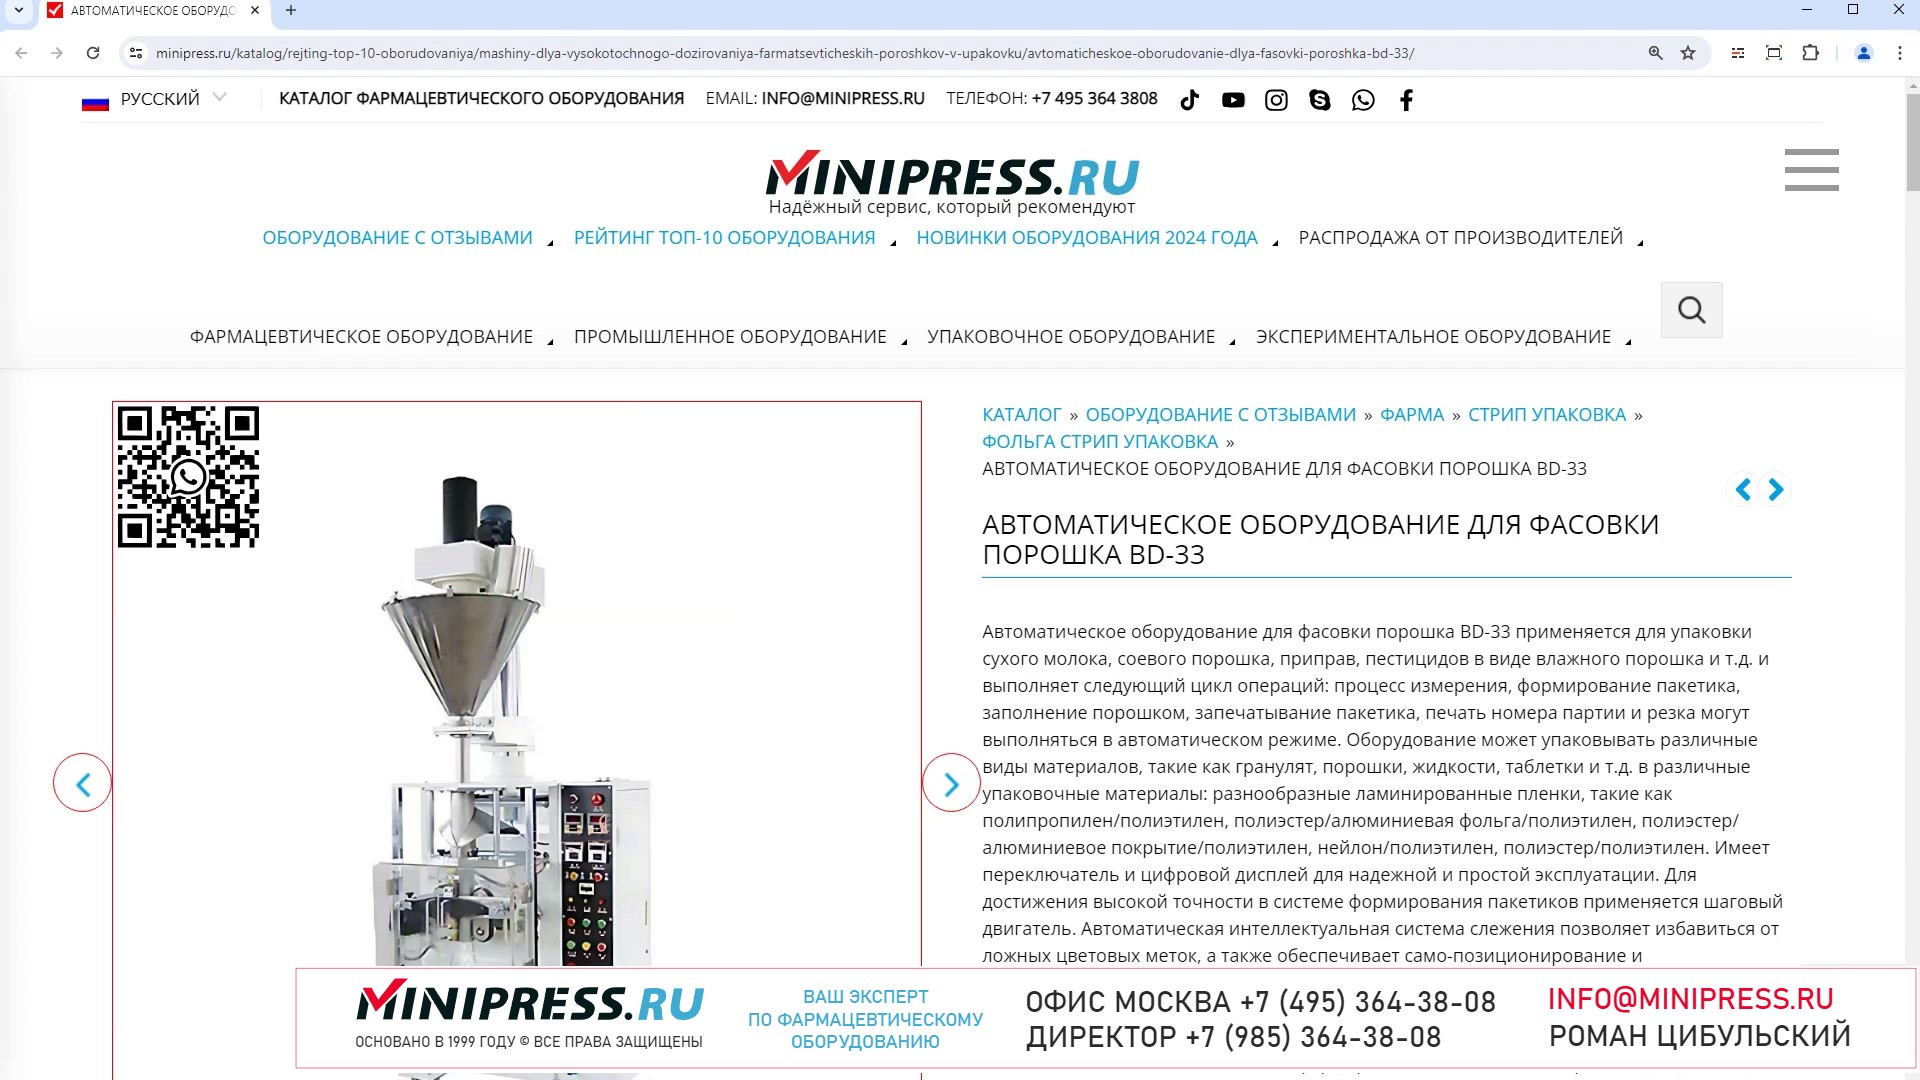 Minipress.ru Автоматическое оборудование для фасовки порошка BD-33